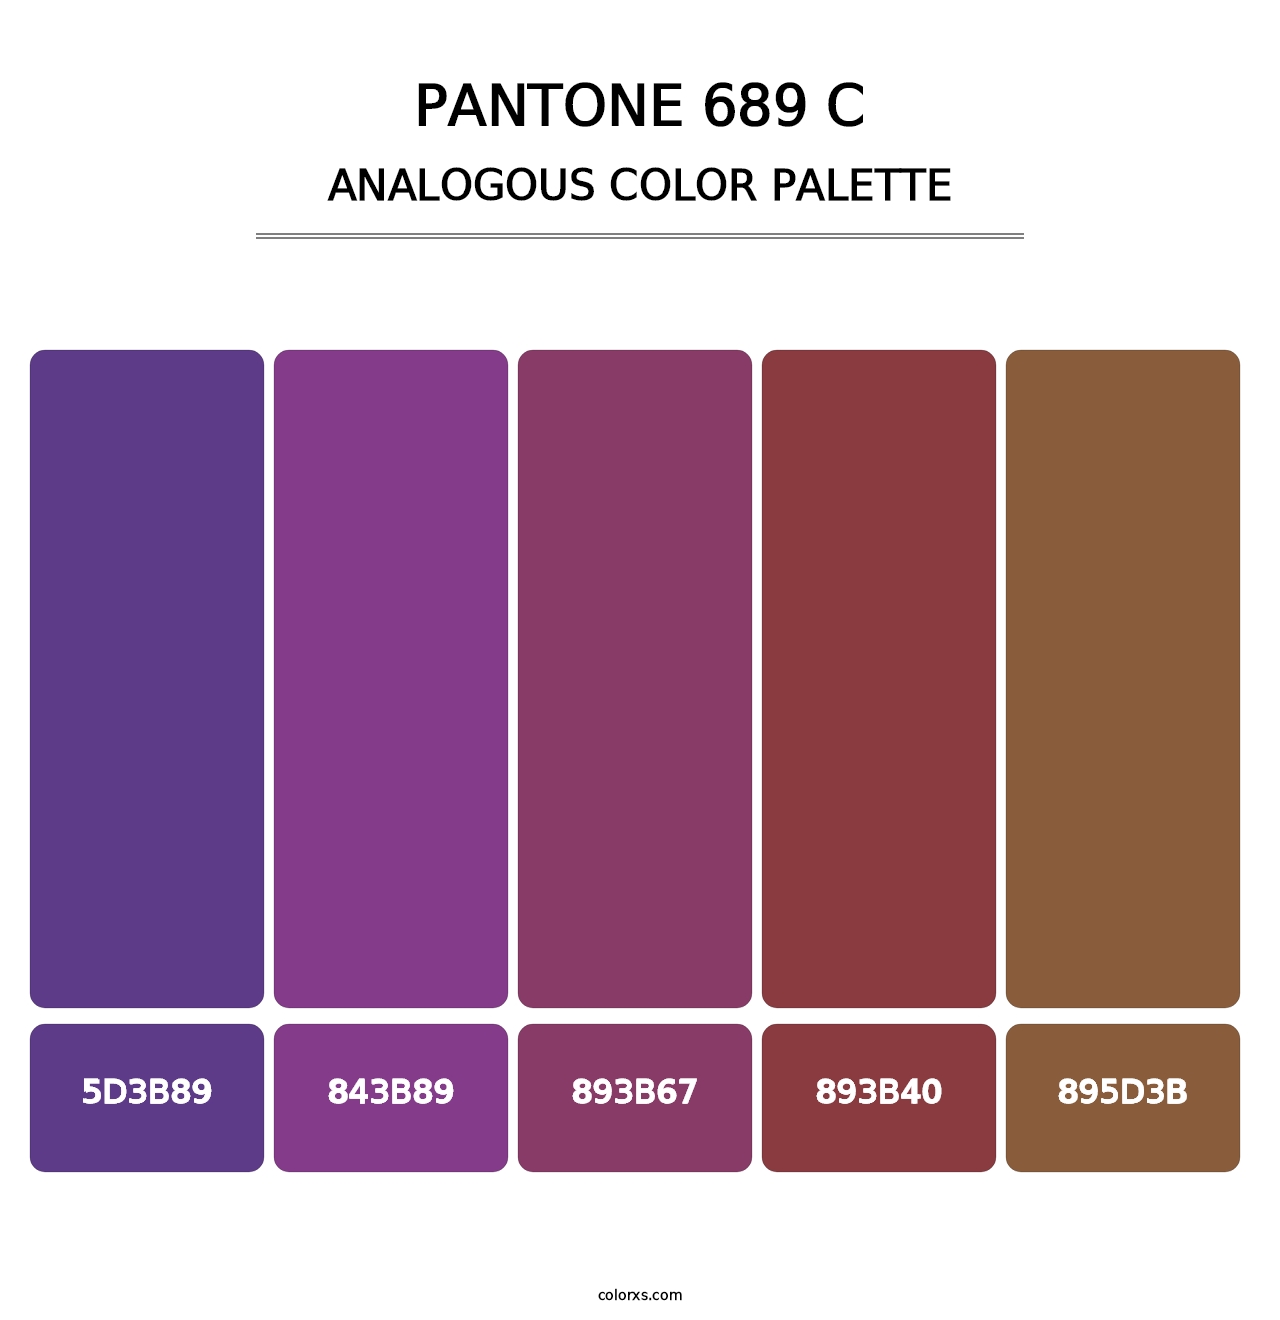 PANTONE 689 C - Analogous Color Palette